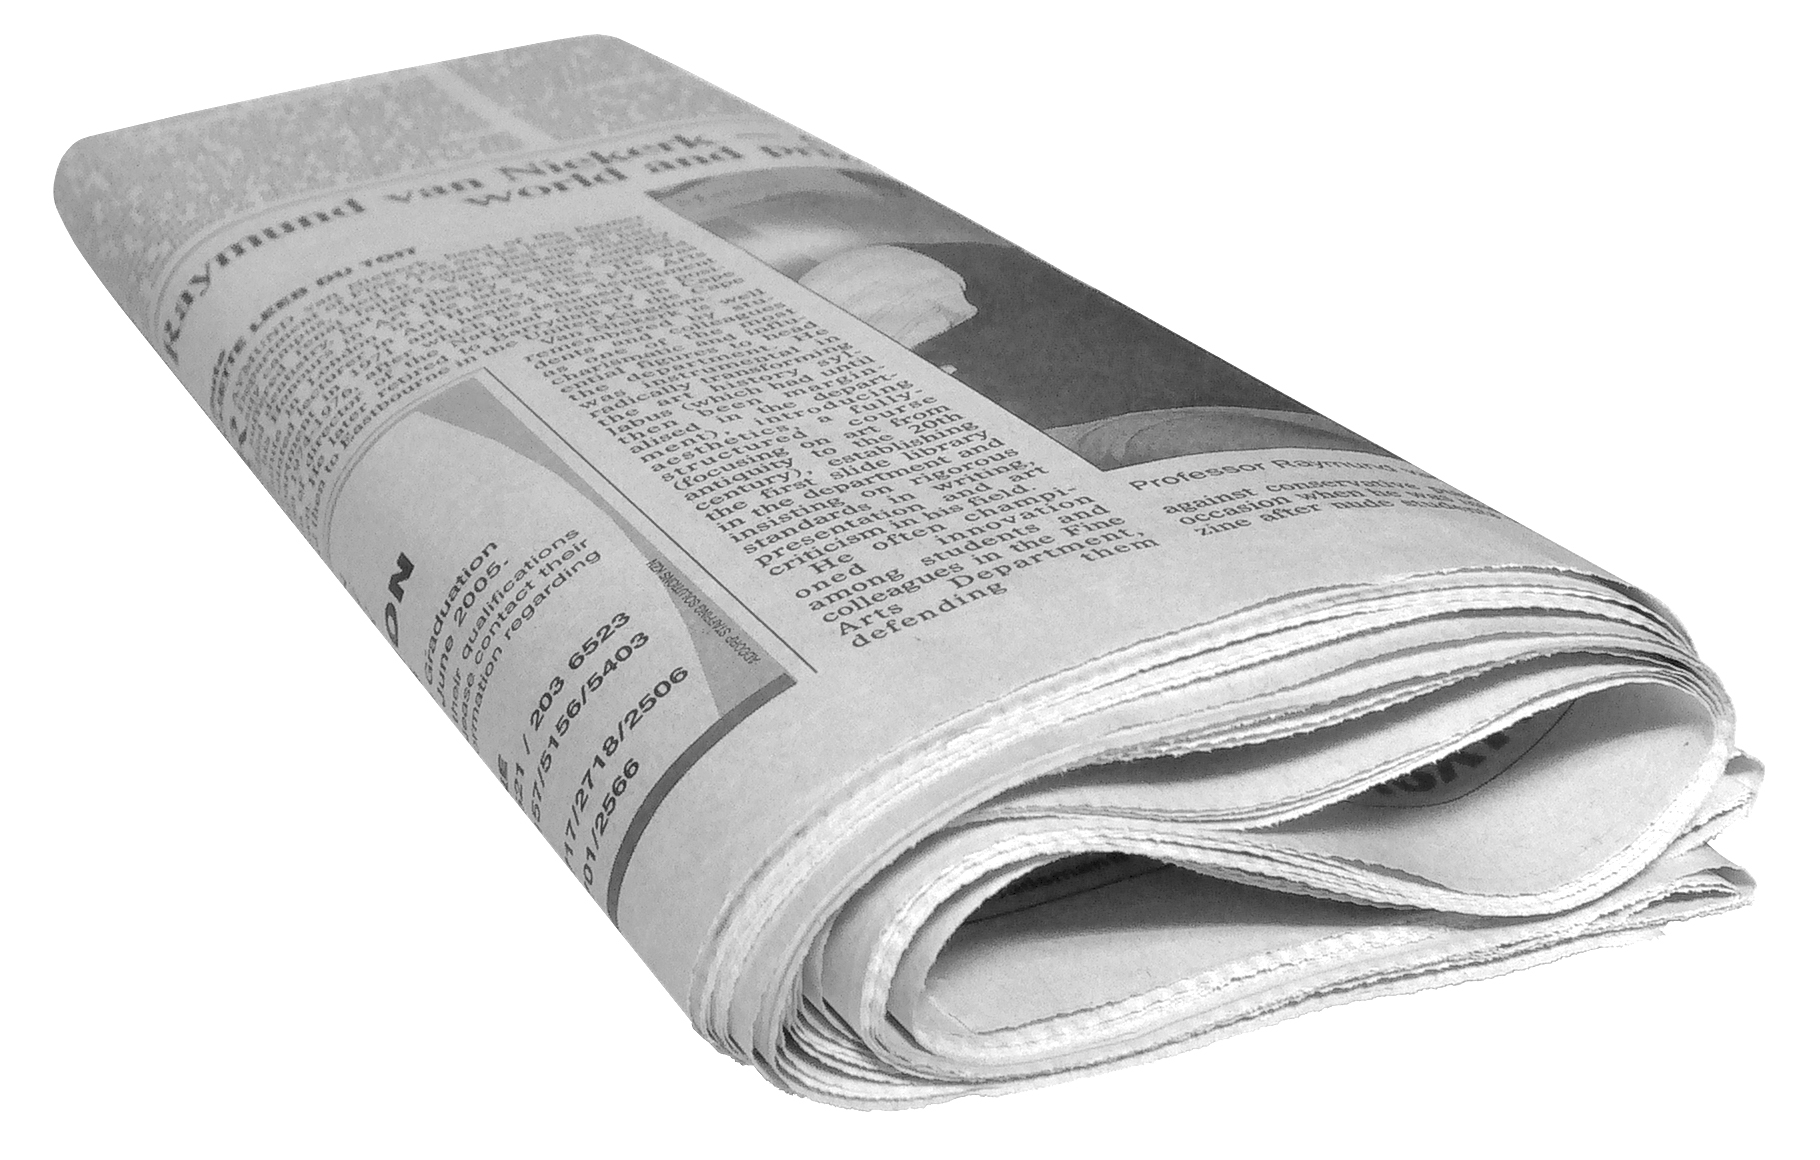 Vereinszeitungen gedrückt-im klassischen Sinne